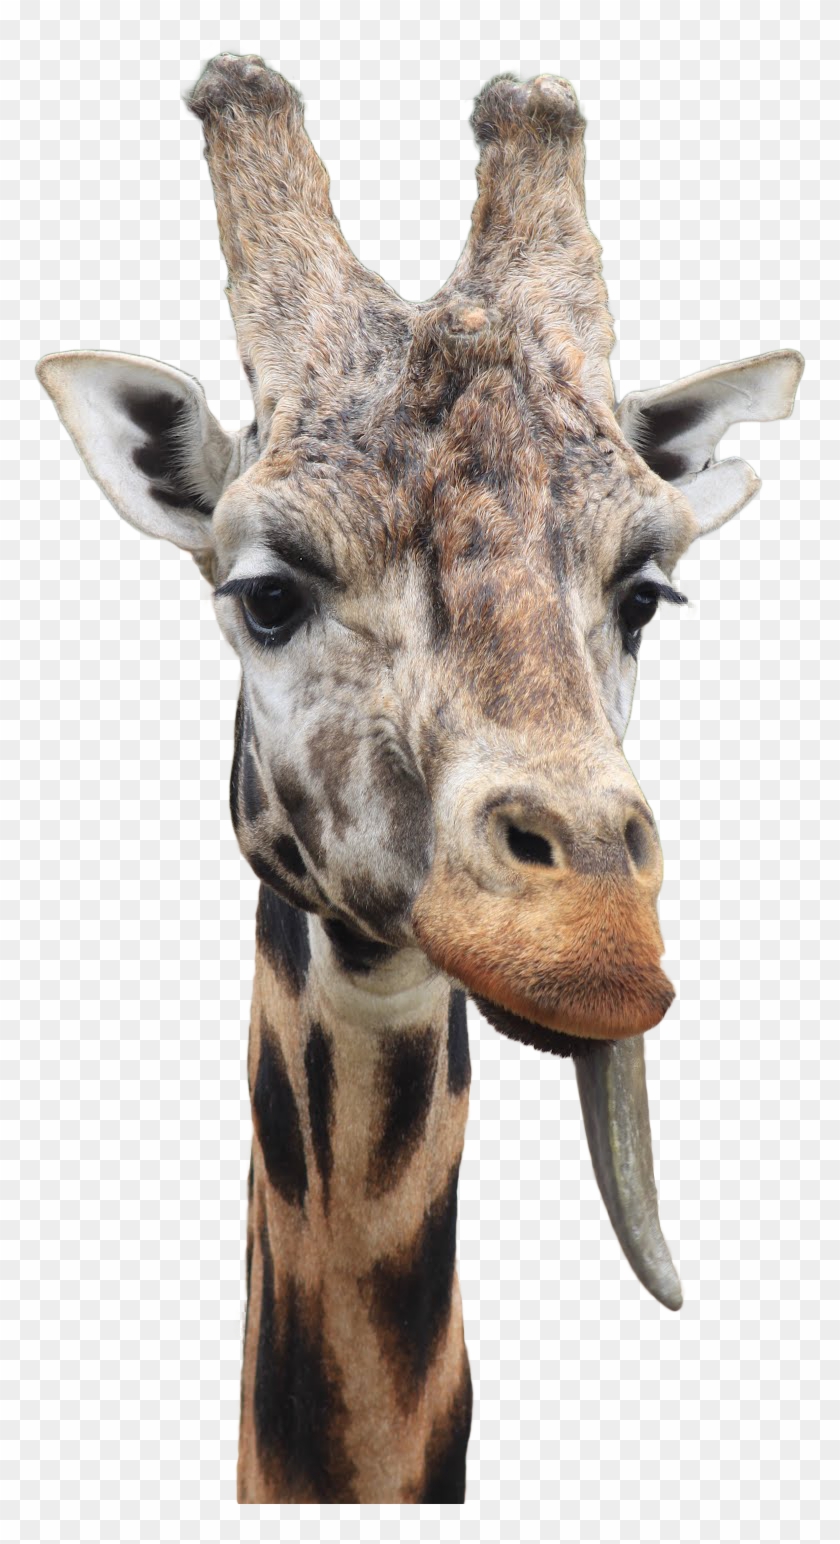 Giraffe With Tongue Out - Giraffe #780089